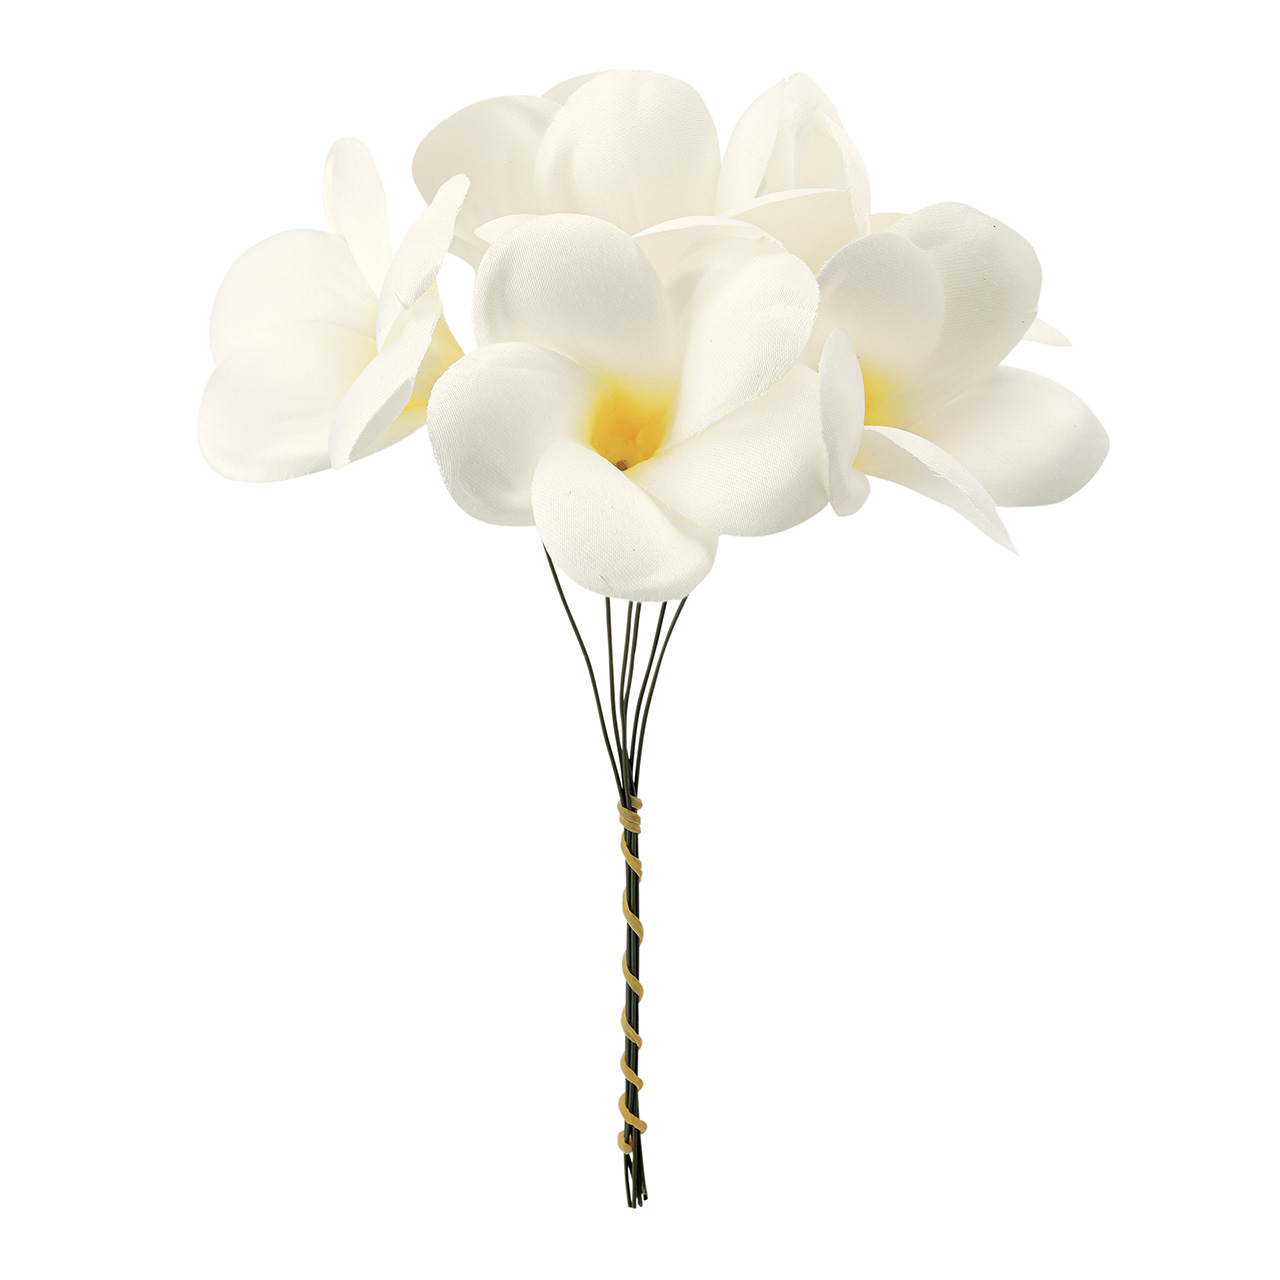 マイフラ】 通販/MAGIQ カレンプルメリアピック クリーム アーティフィシャルフラワー 造花 プルメリア FM000973-037(クリーム):  MAGIQ(アーティフィシャルフラワー 造花)/全国にMAGIQ、花器、花資材などをお届けします。